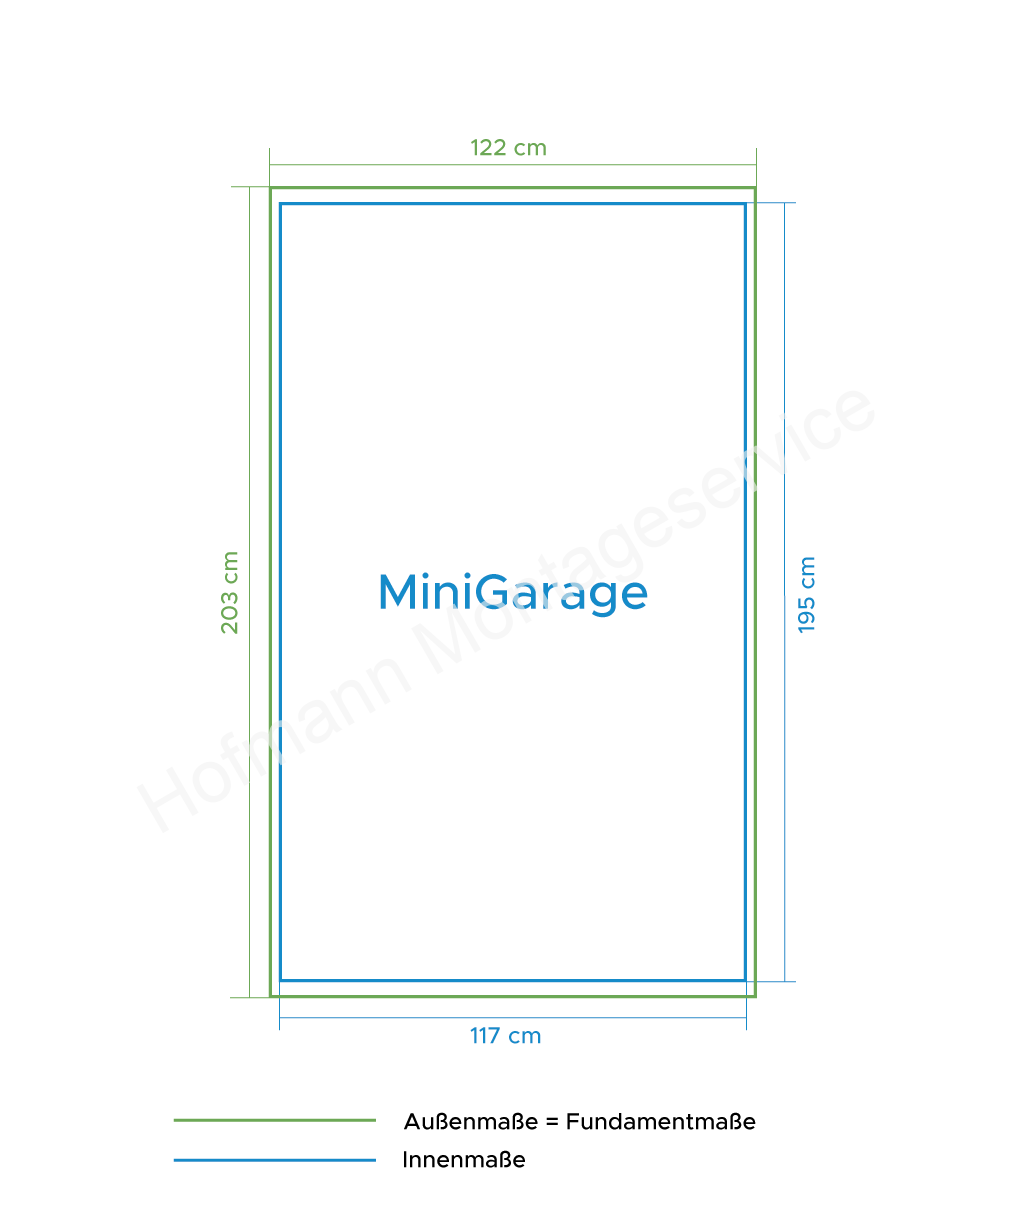 MiniGarage